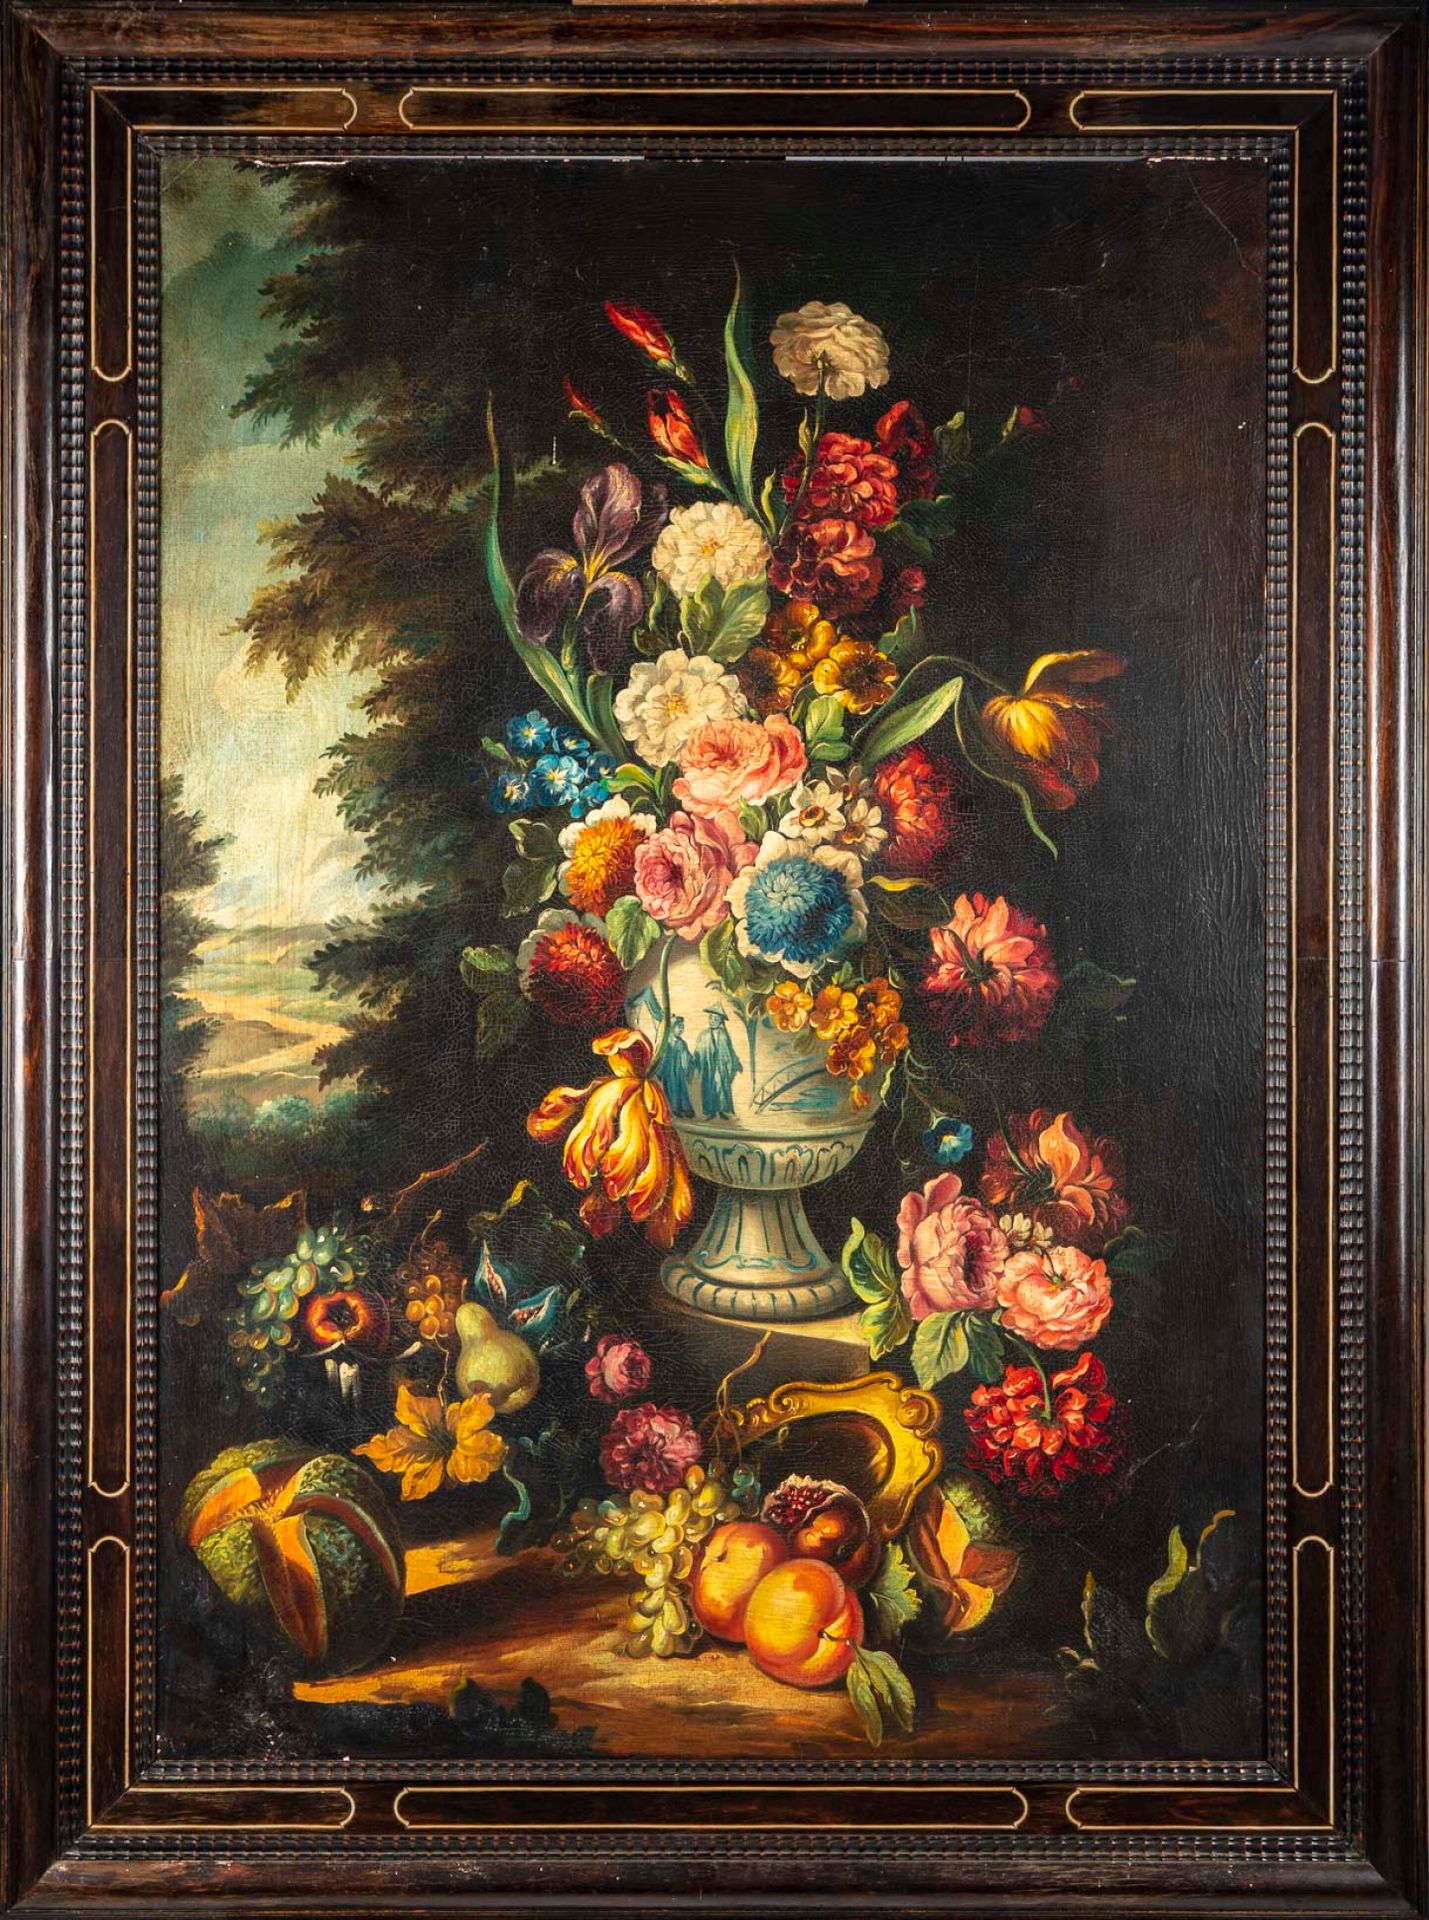 École hollandaise 17世纪霍兰德学校的味道

中国花瓶中的花束

布面油画

99 x 68 厘米

17世纪荷兰风格的饰面框架